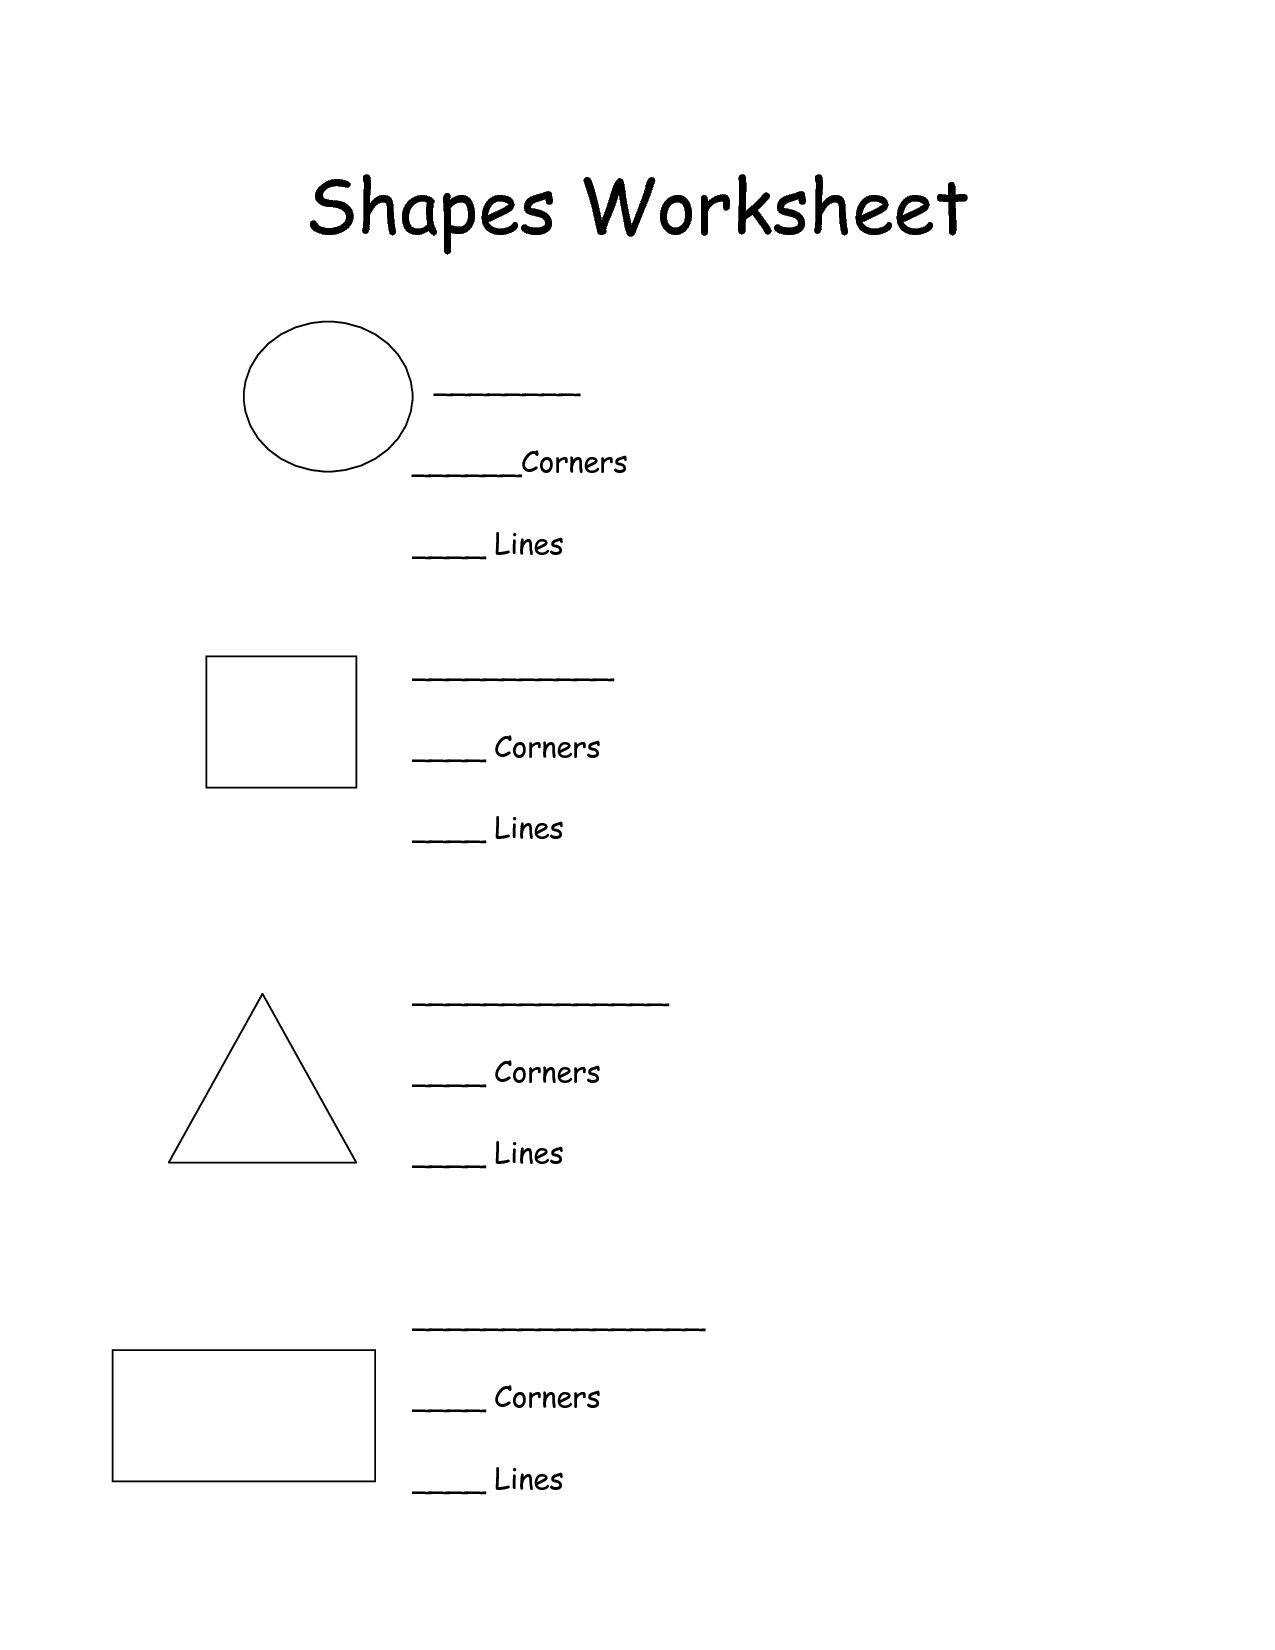 3D Shapes Worksheets 1st Grade Image